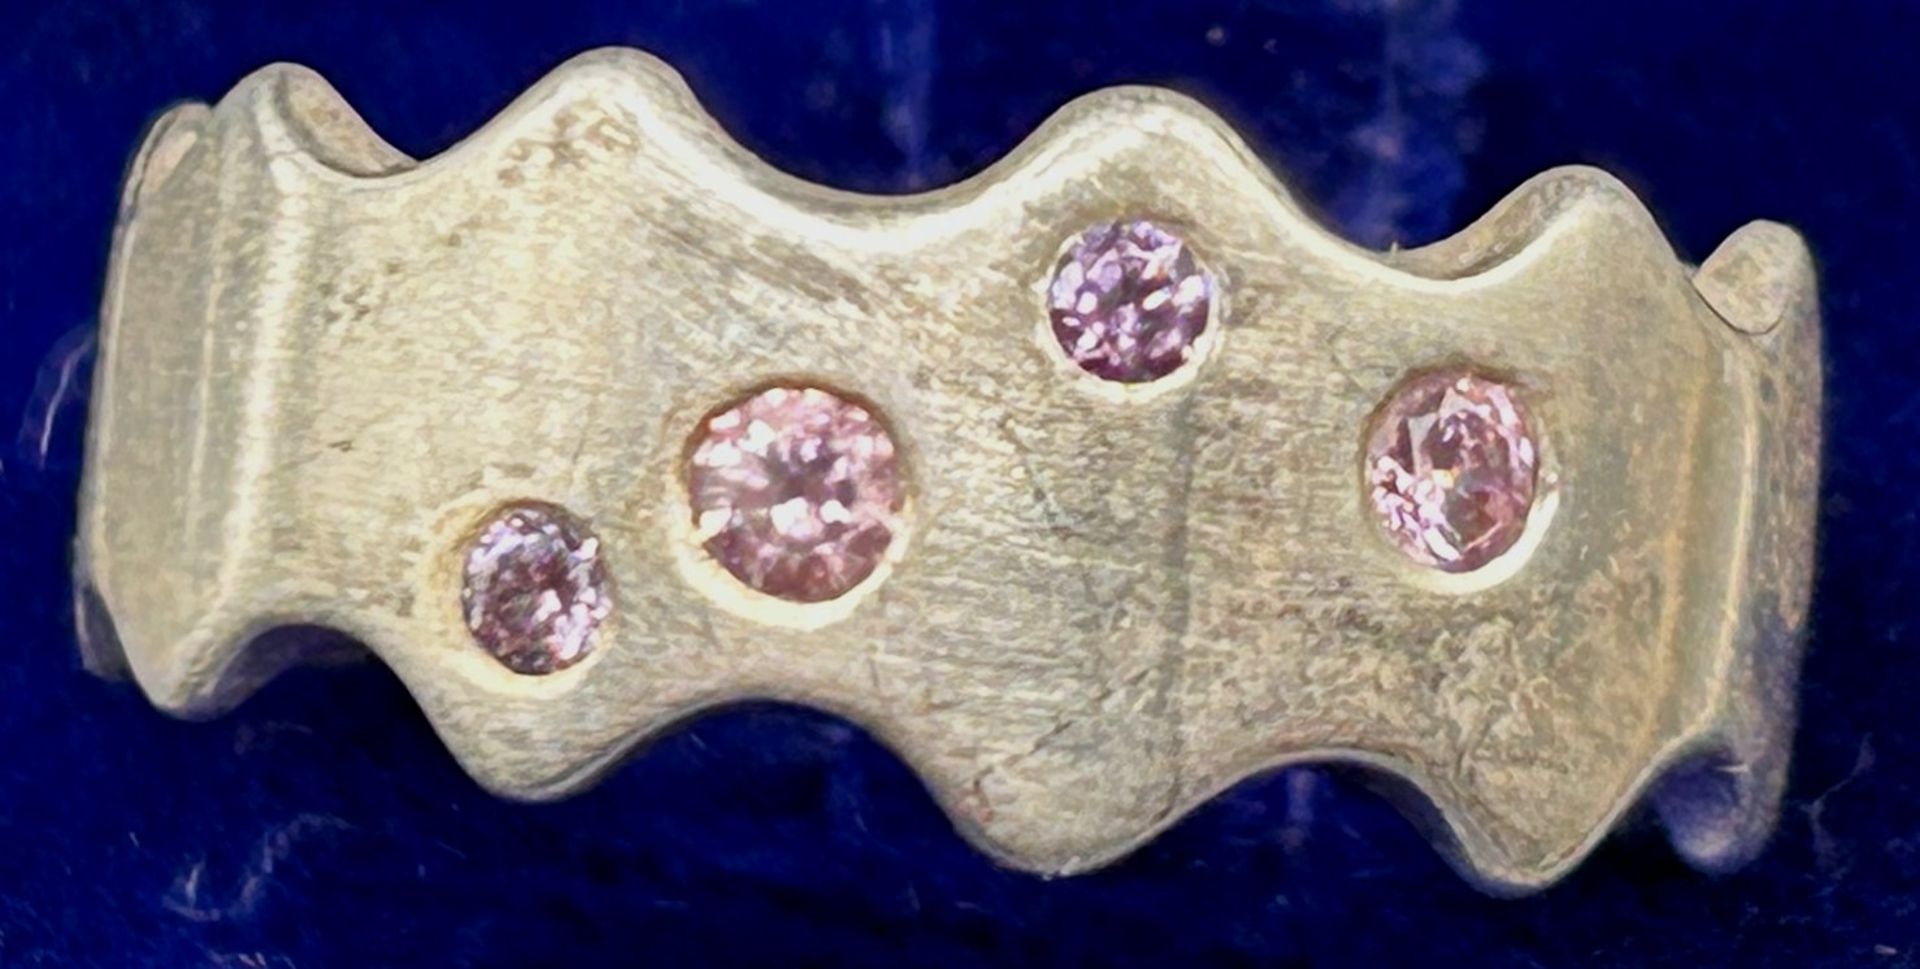 Silberring-925- mit 4 pinken Steinen, RG 56, 6,4 gr